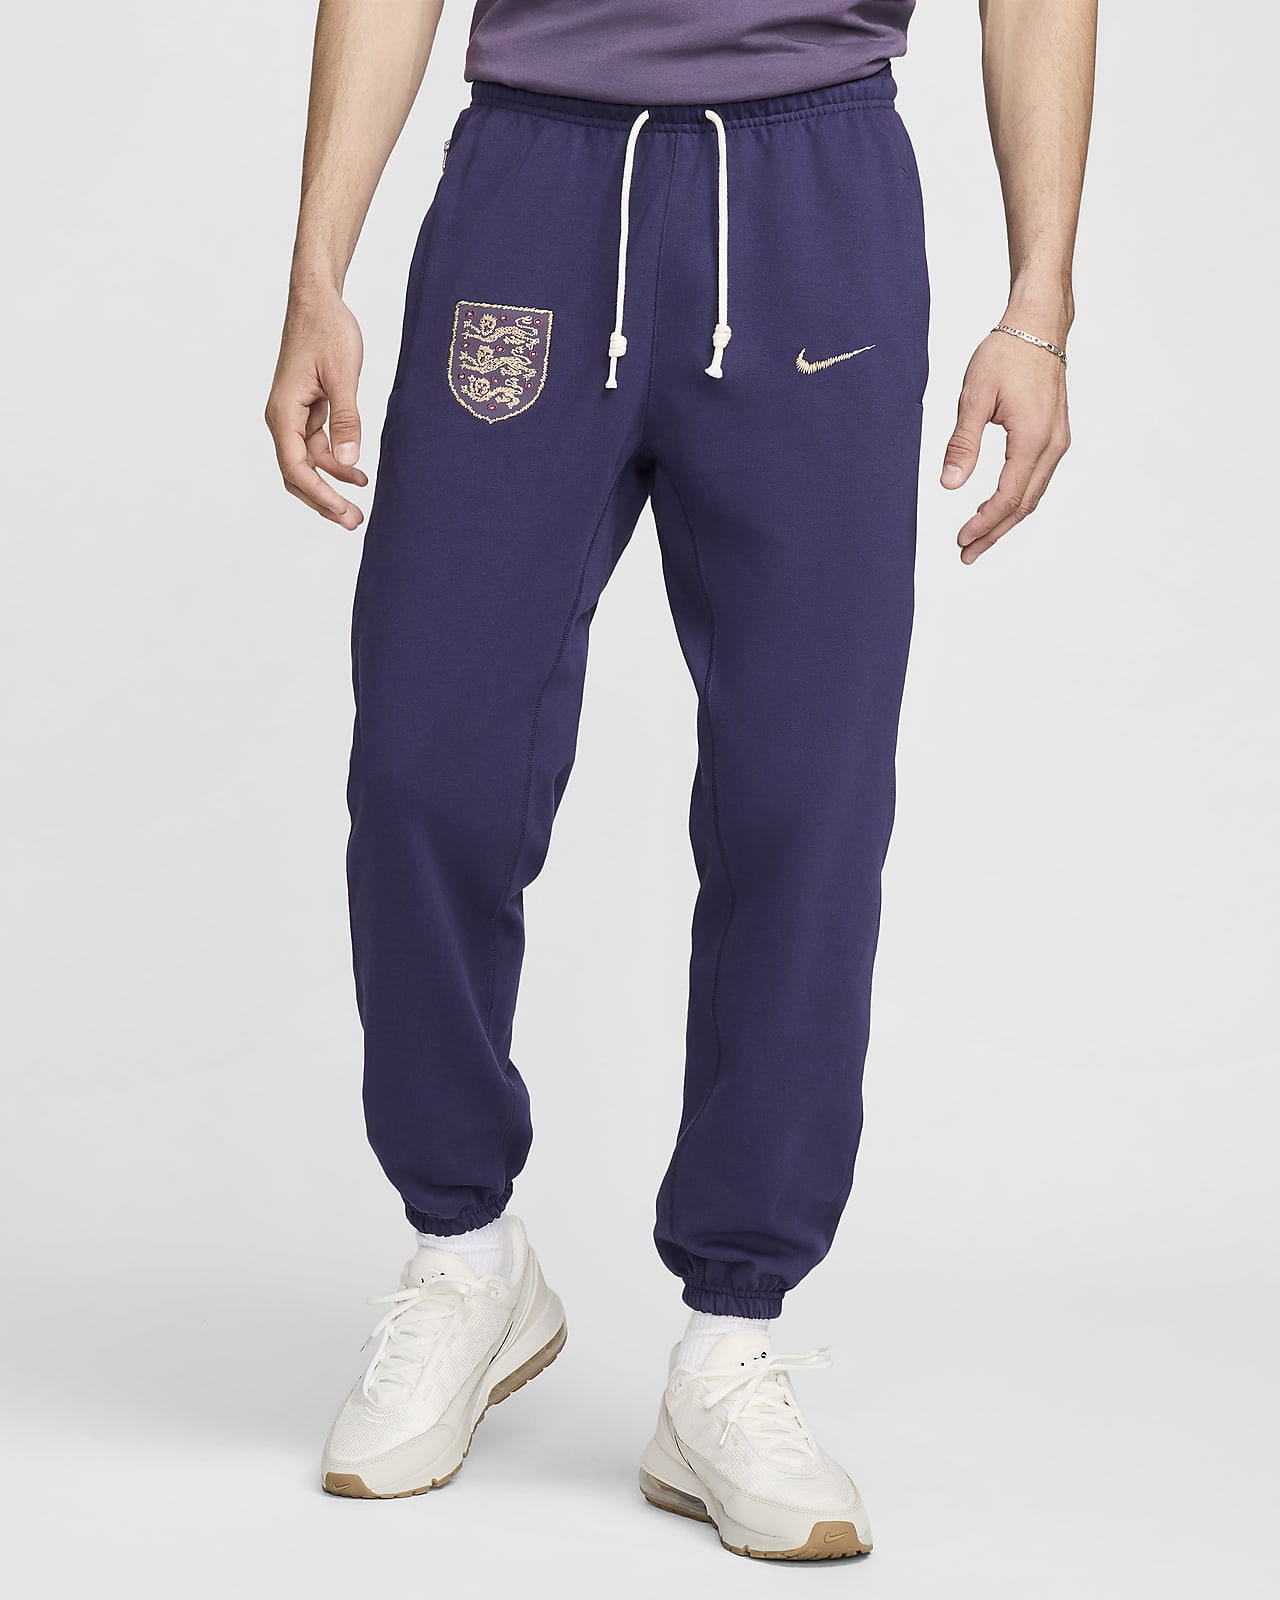 England Standard Issue Nike Fußballhose für Herren